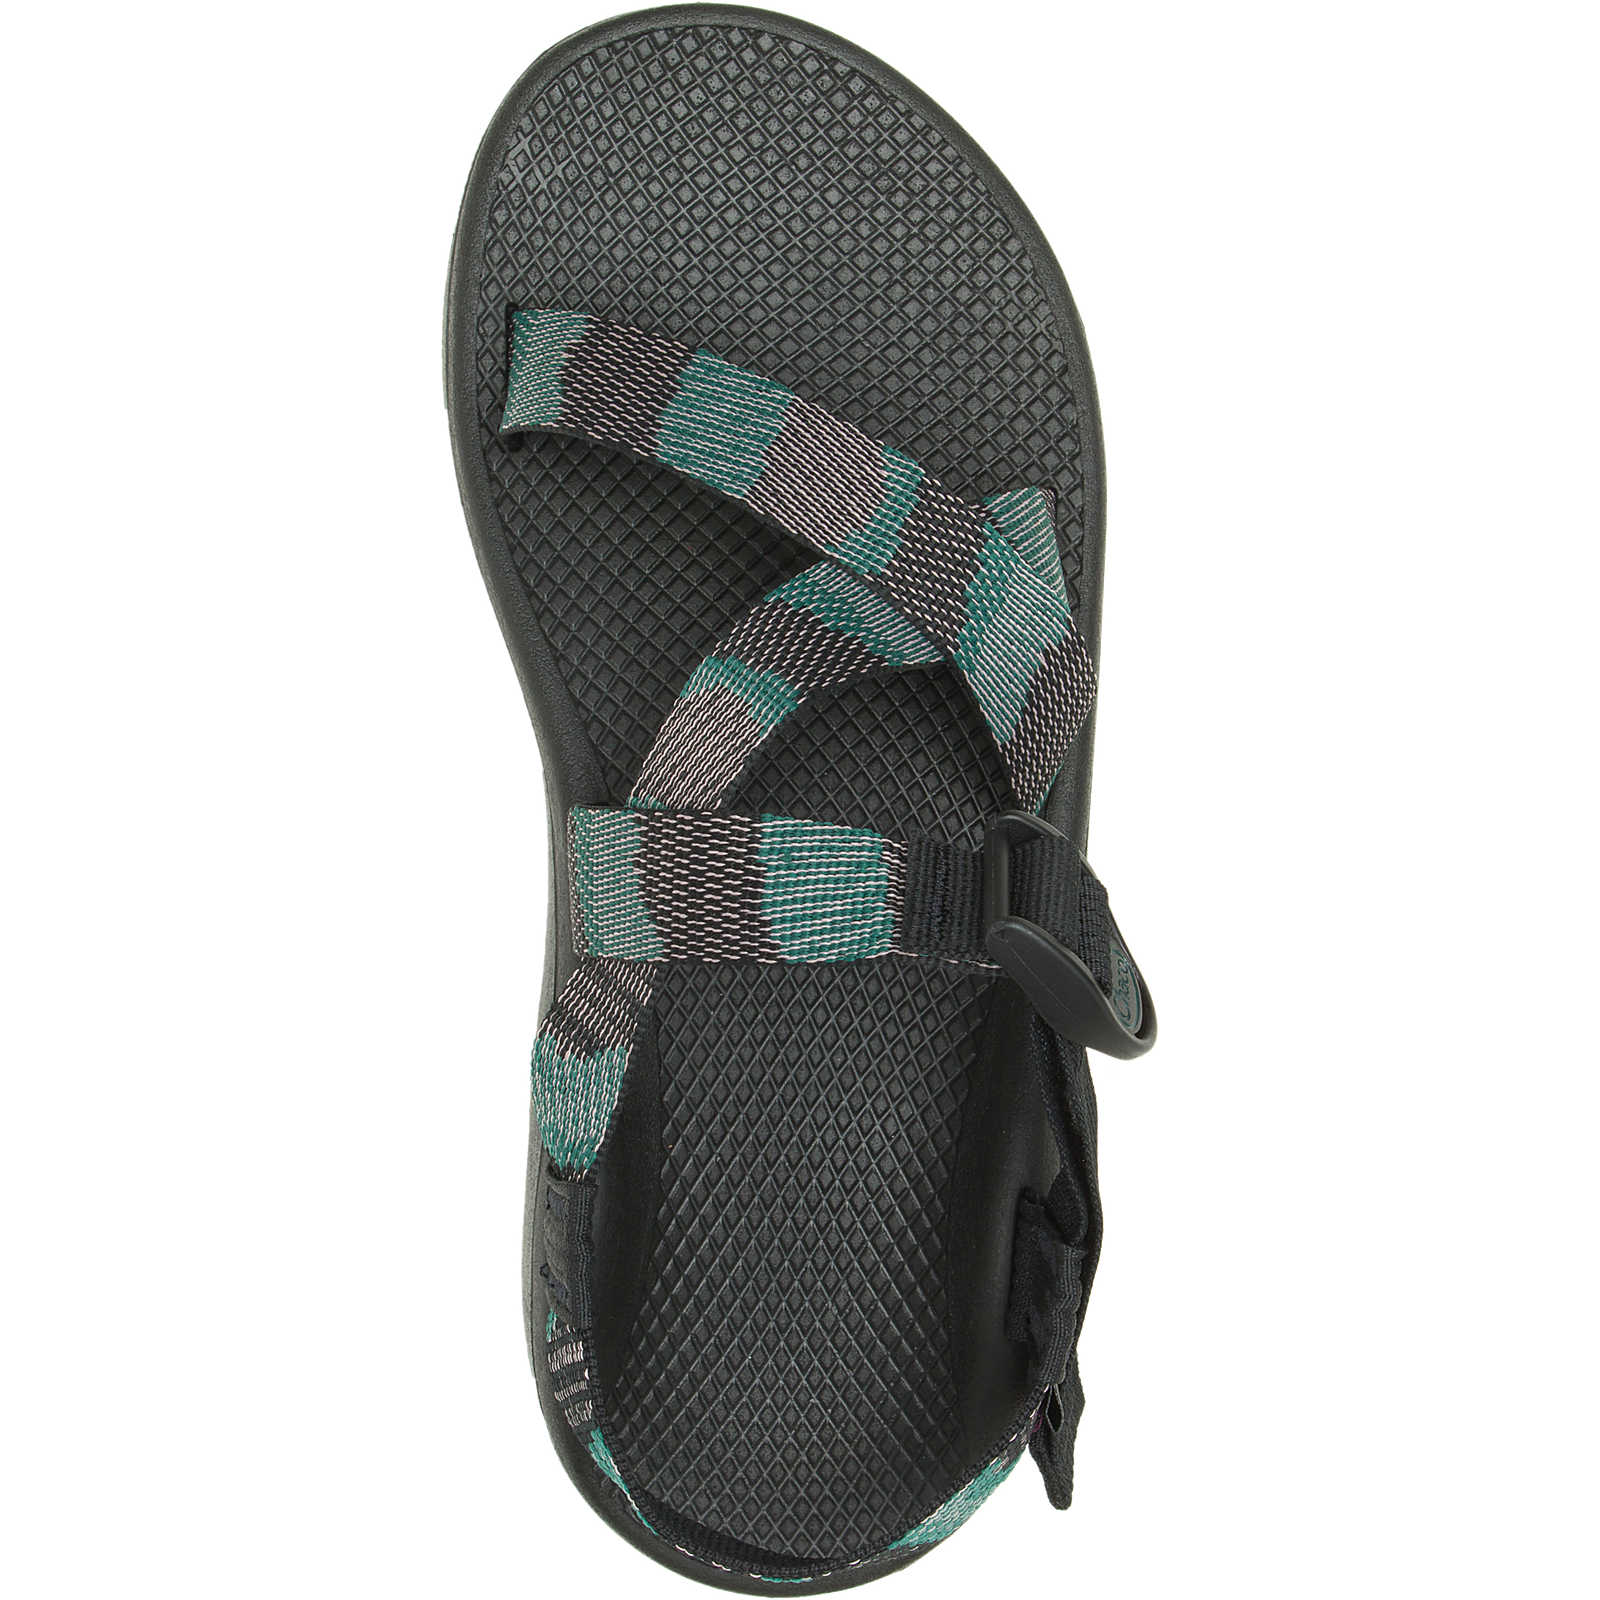 ZCloud Sandals for Men - S24